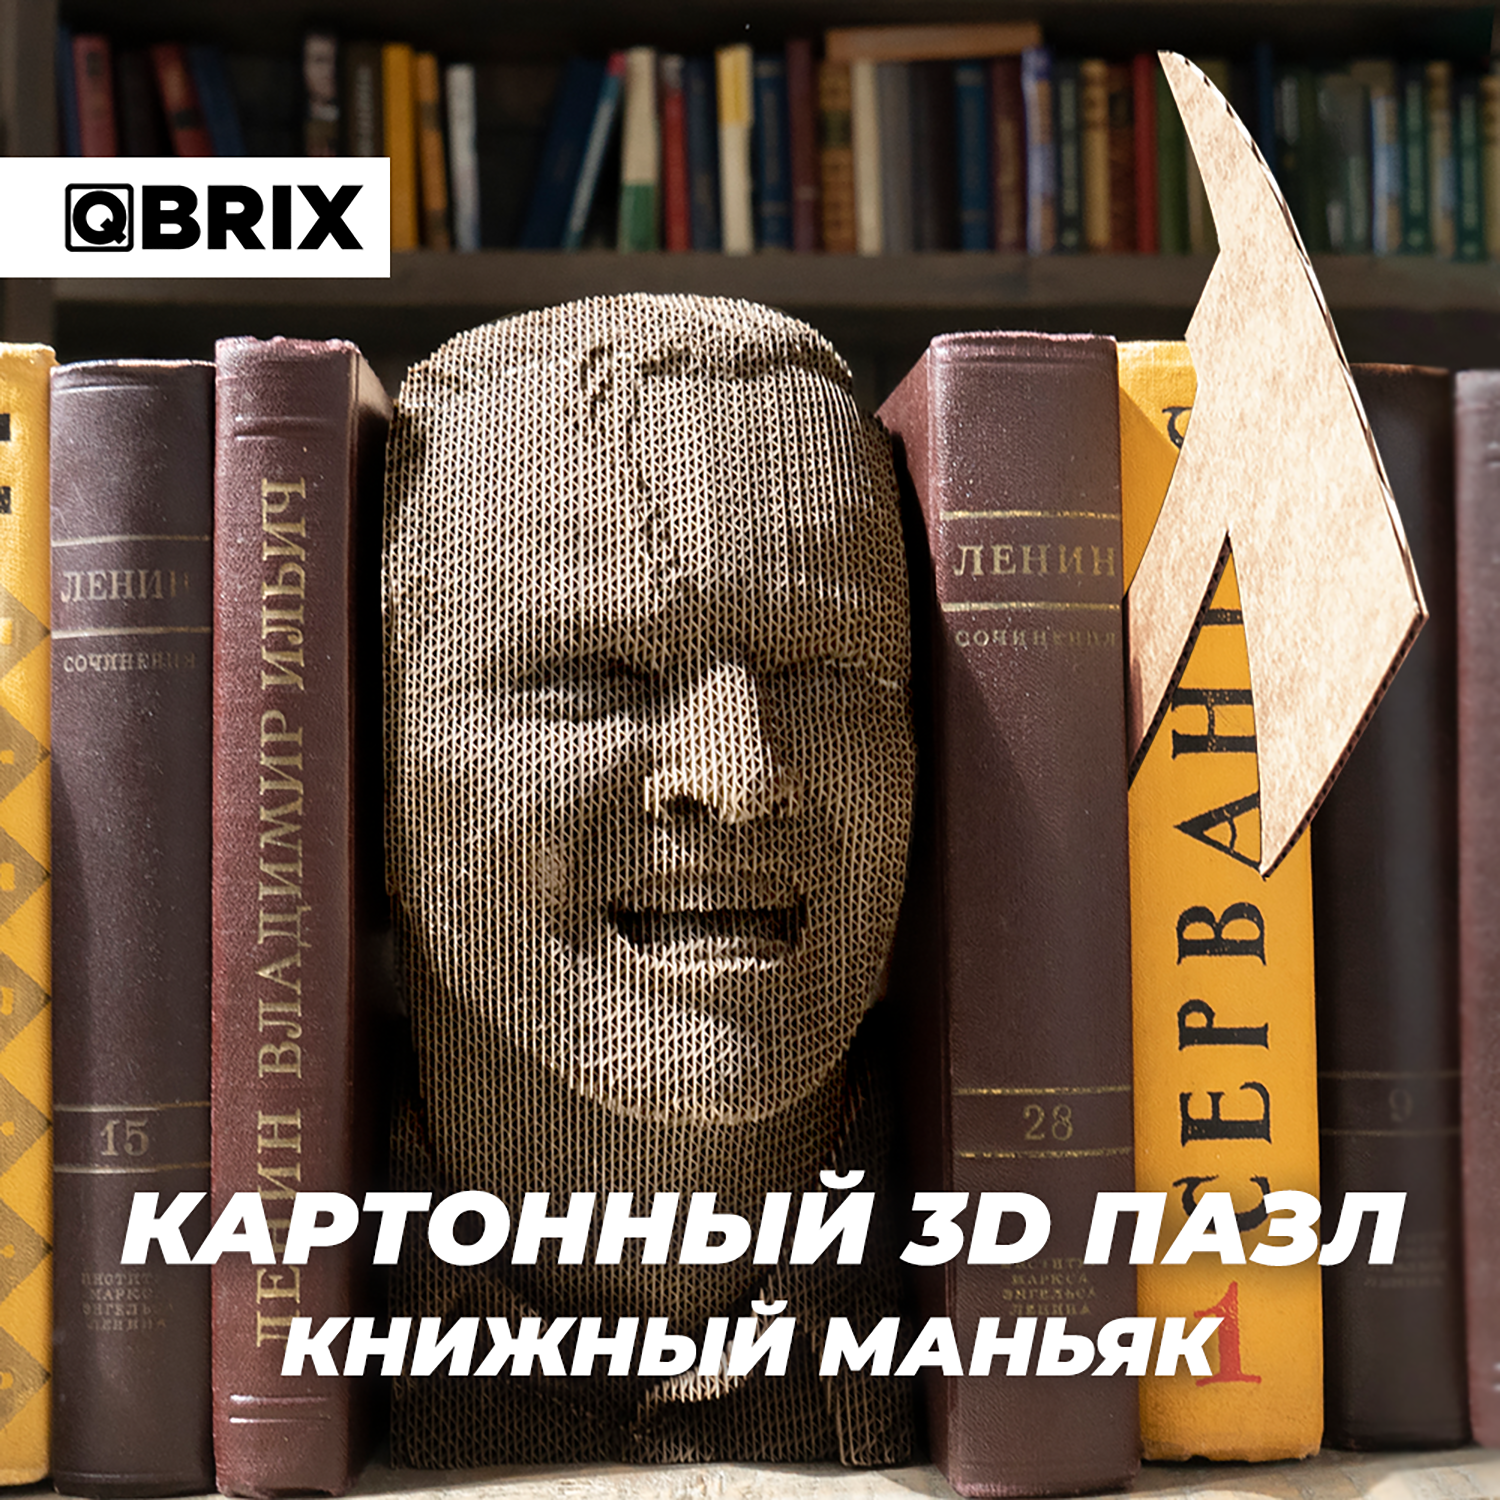 Конструктор QBRIX 3D картонный Книжный Маньяк 20006 20006 - фото 6